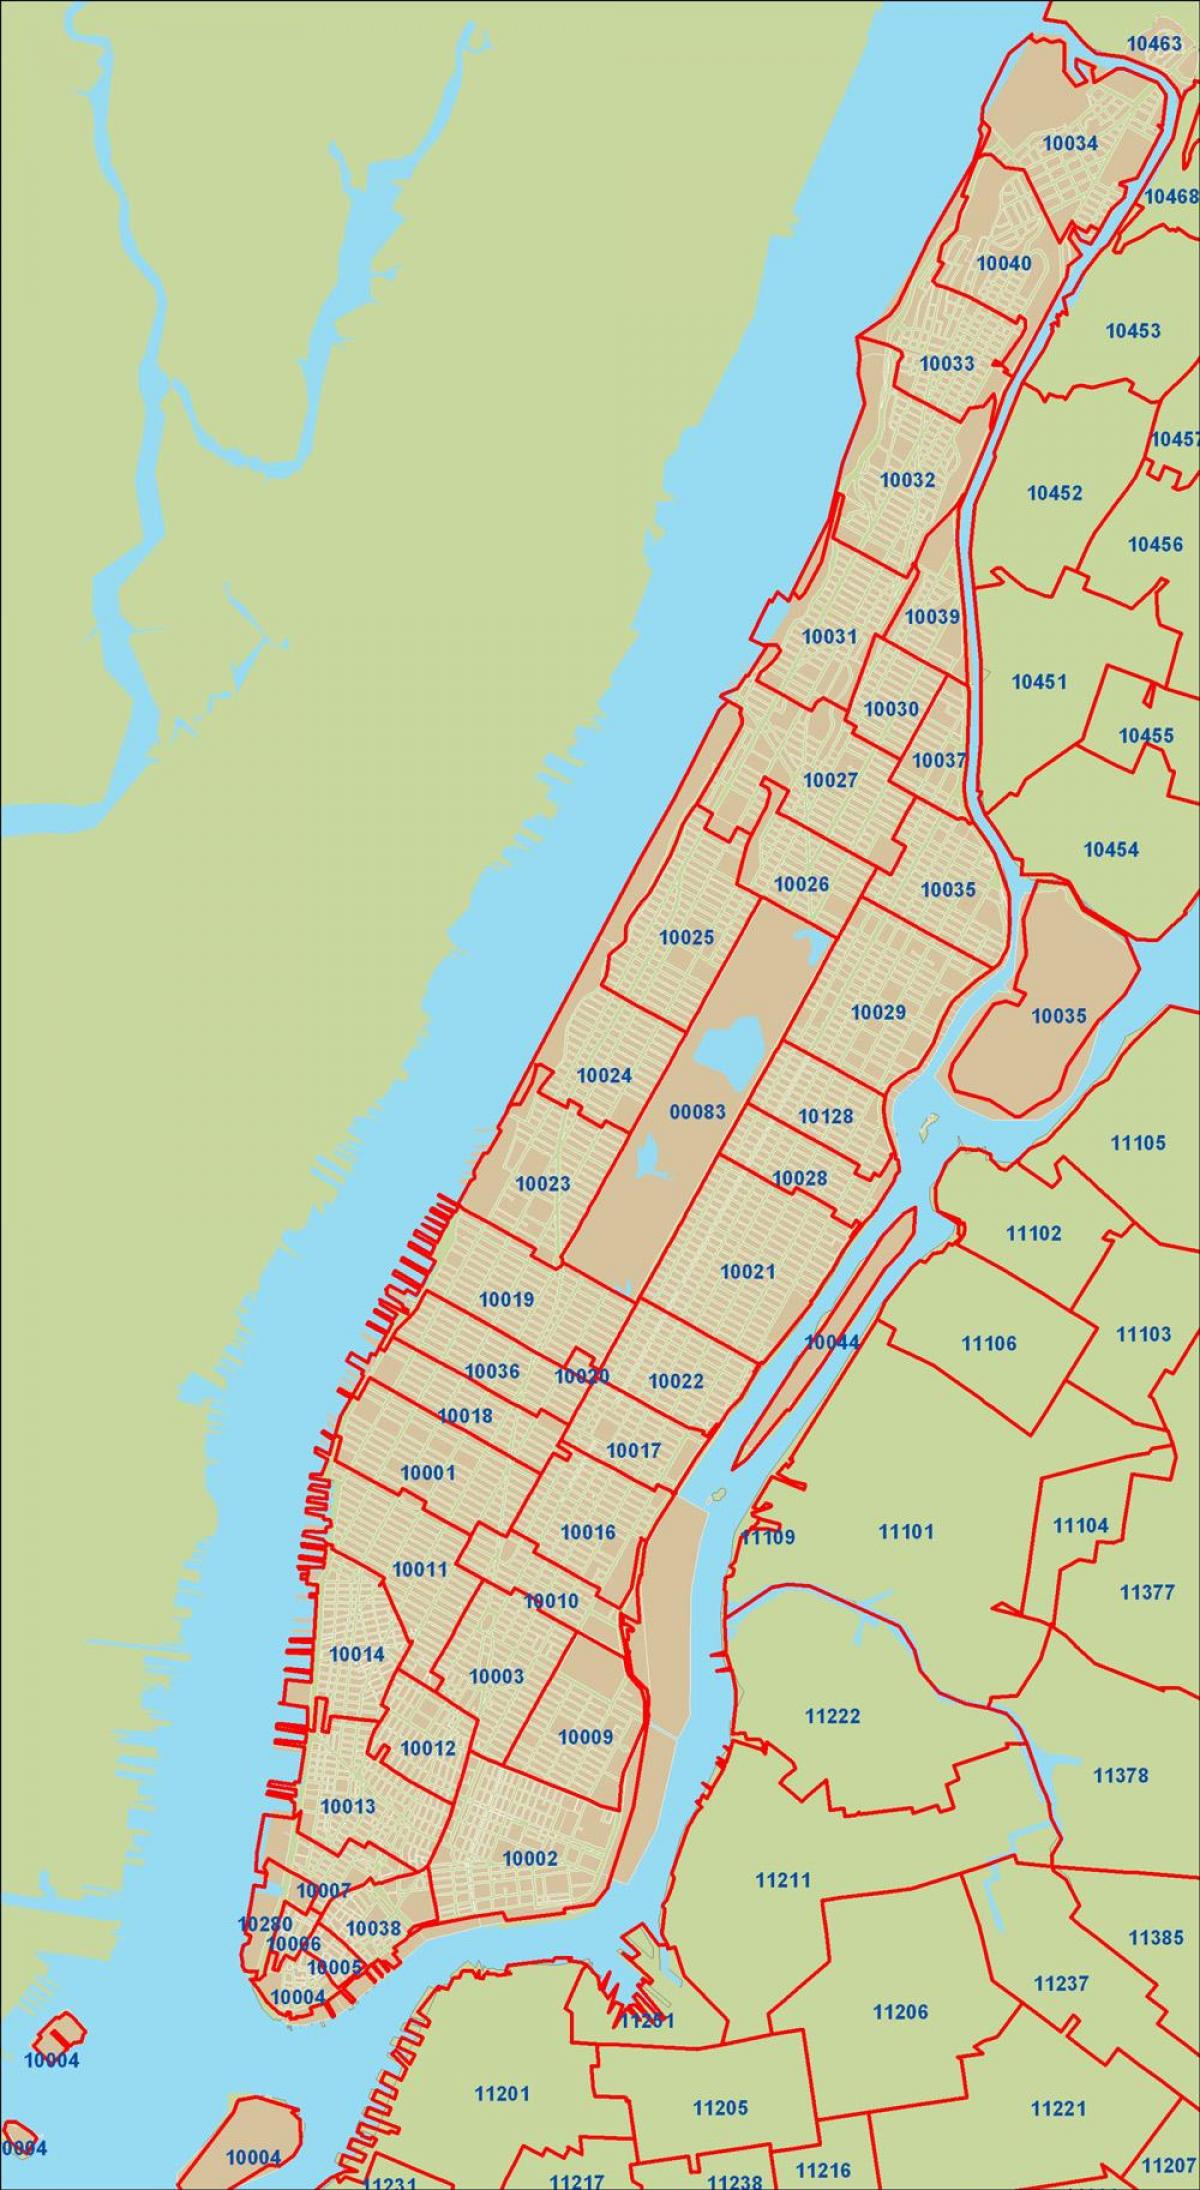 NYC საფოსტო კოდი რუკა, მანჰეტენზე